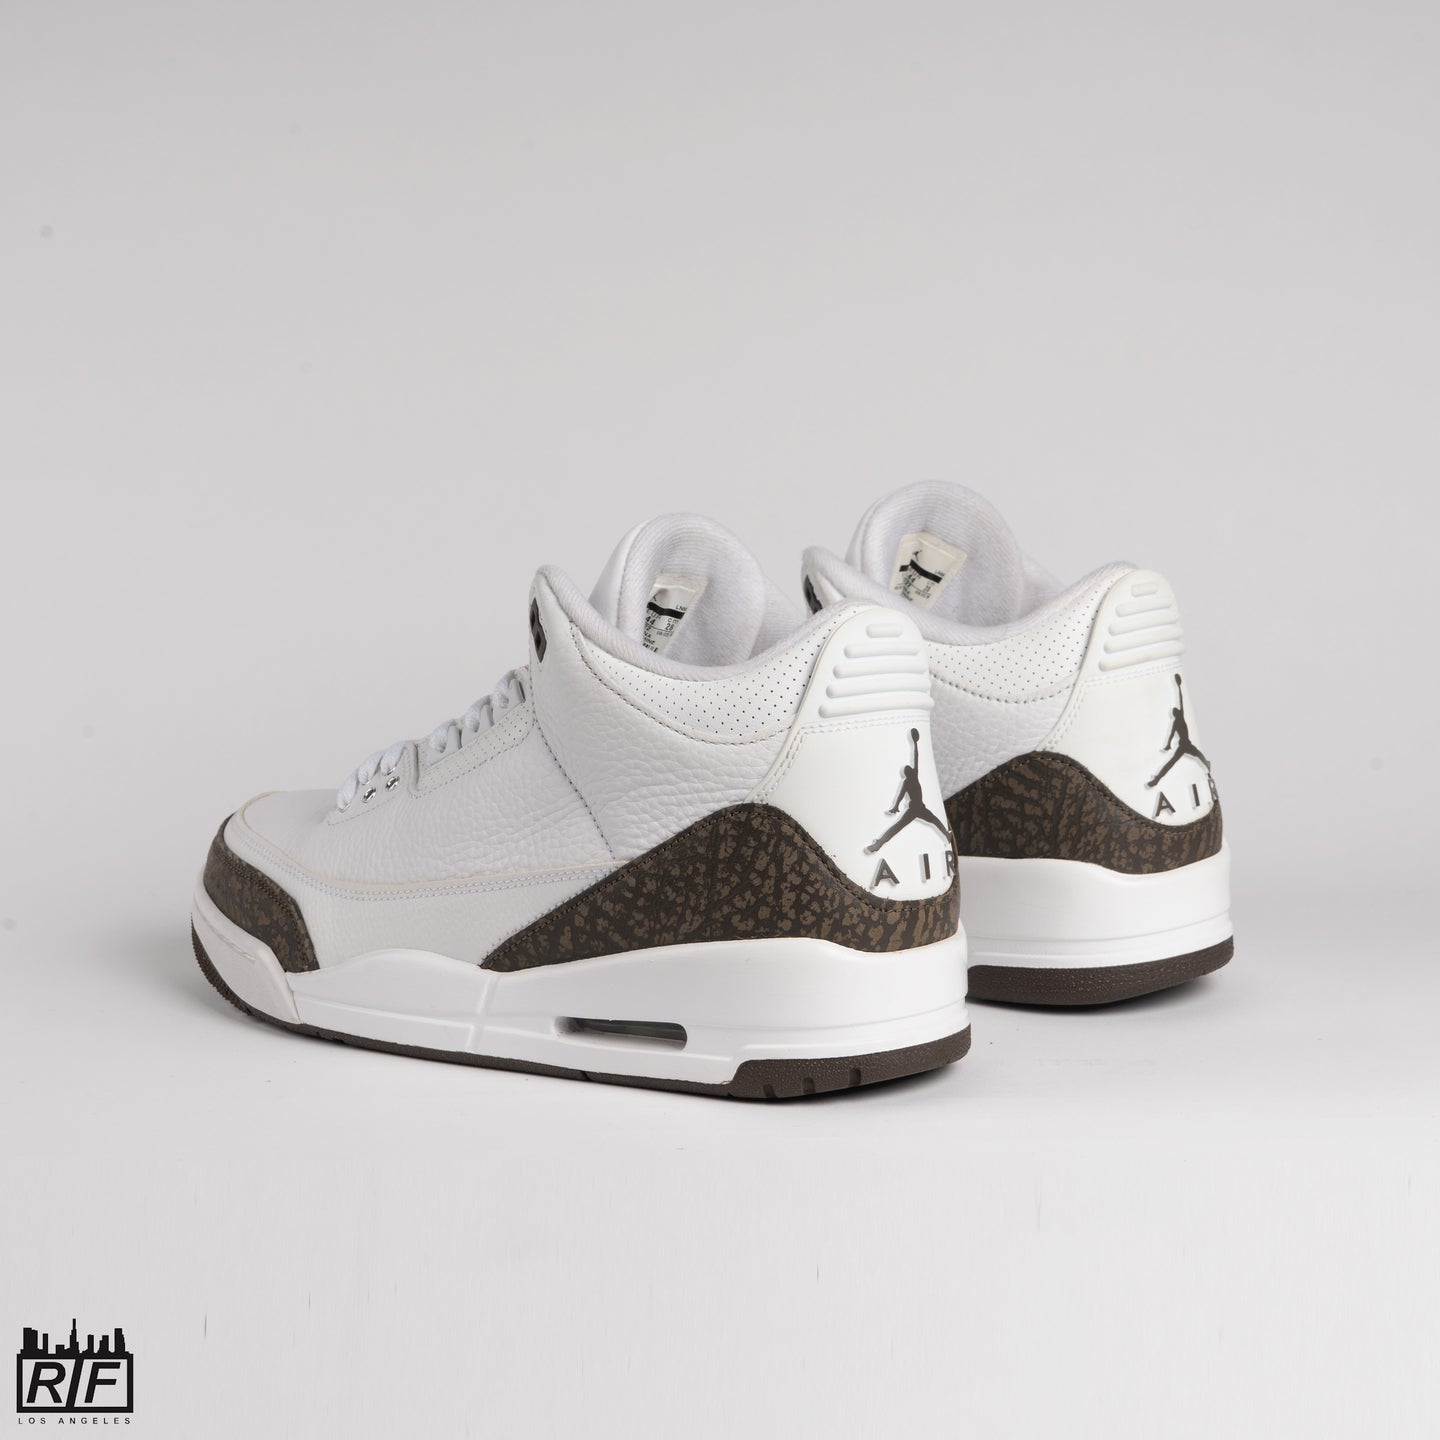 Kicksperience Teases Sneakerheads With Yeezy & Air Jordan Giveaways